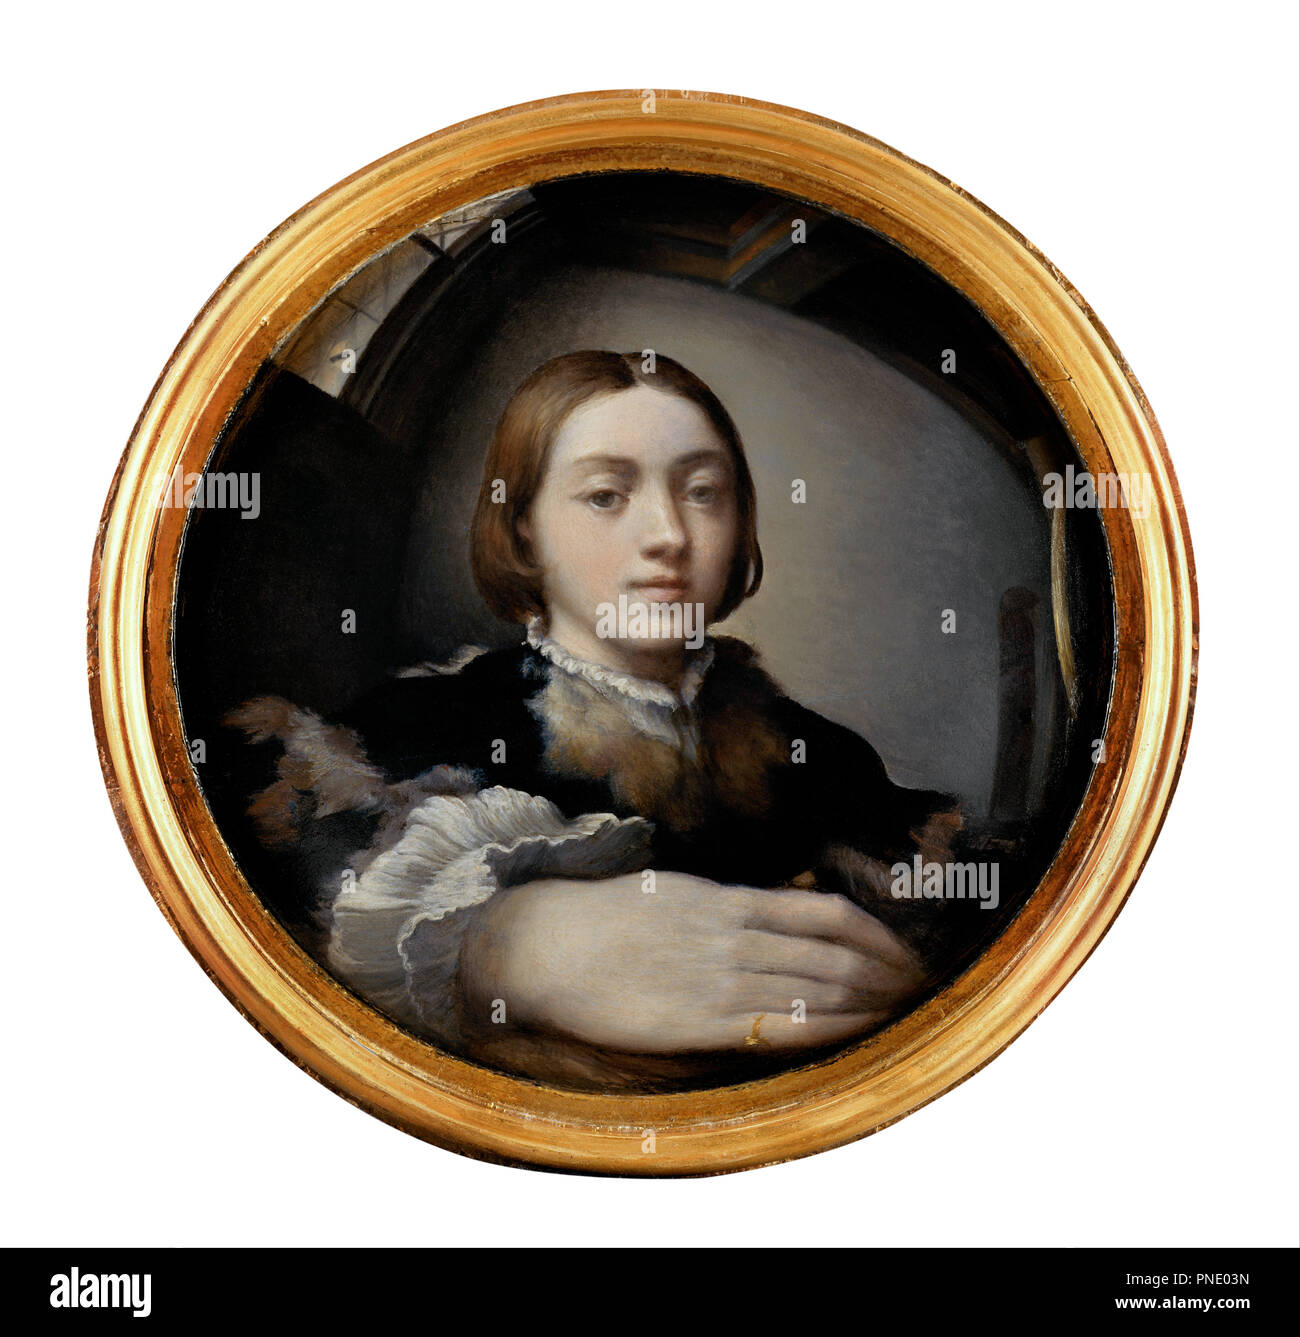 L'auto-portrait. Date/Période : De 1523 jusqu'à 1524. La peinture. Huile sur panneau. Diamètre : 24,4 cm (9,6 in). Auteur : PARMIGIANINO. Banque D'Images